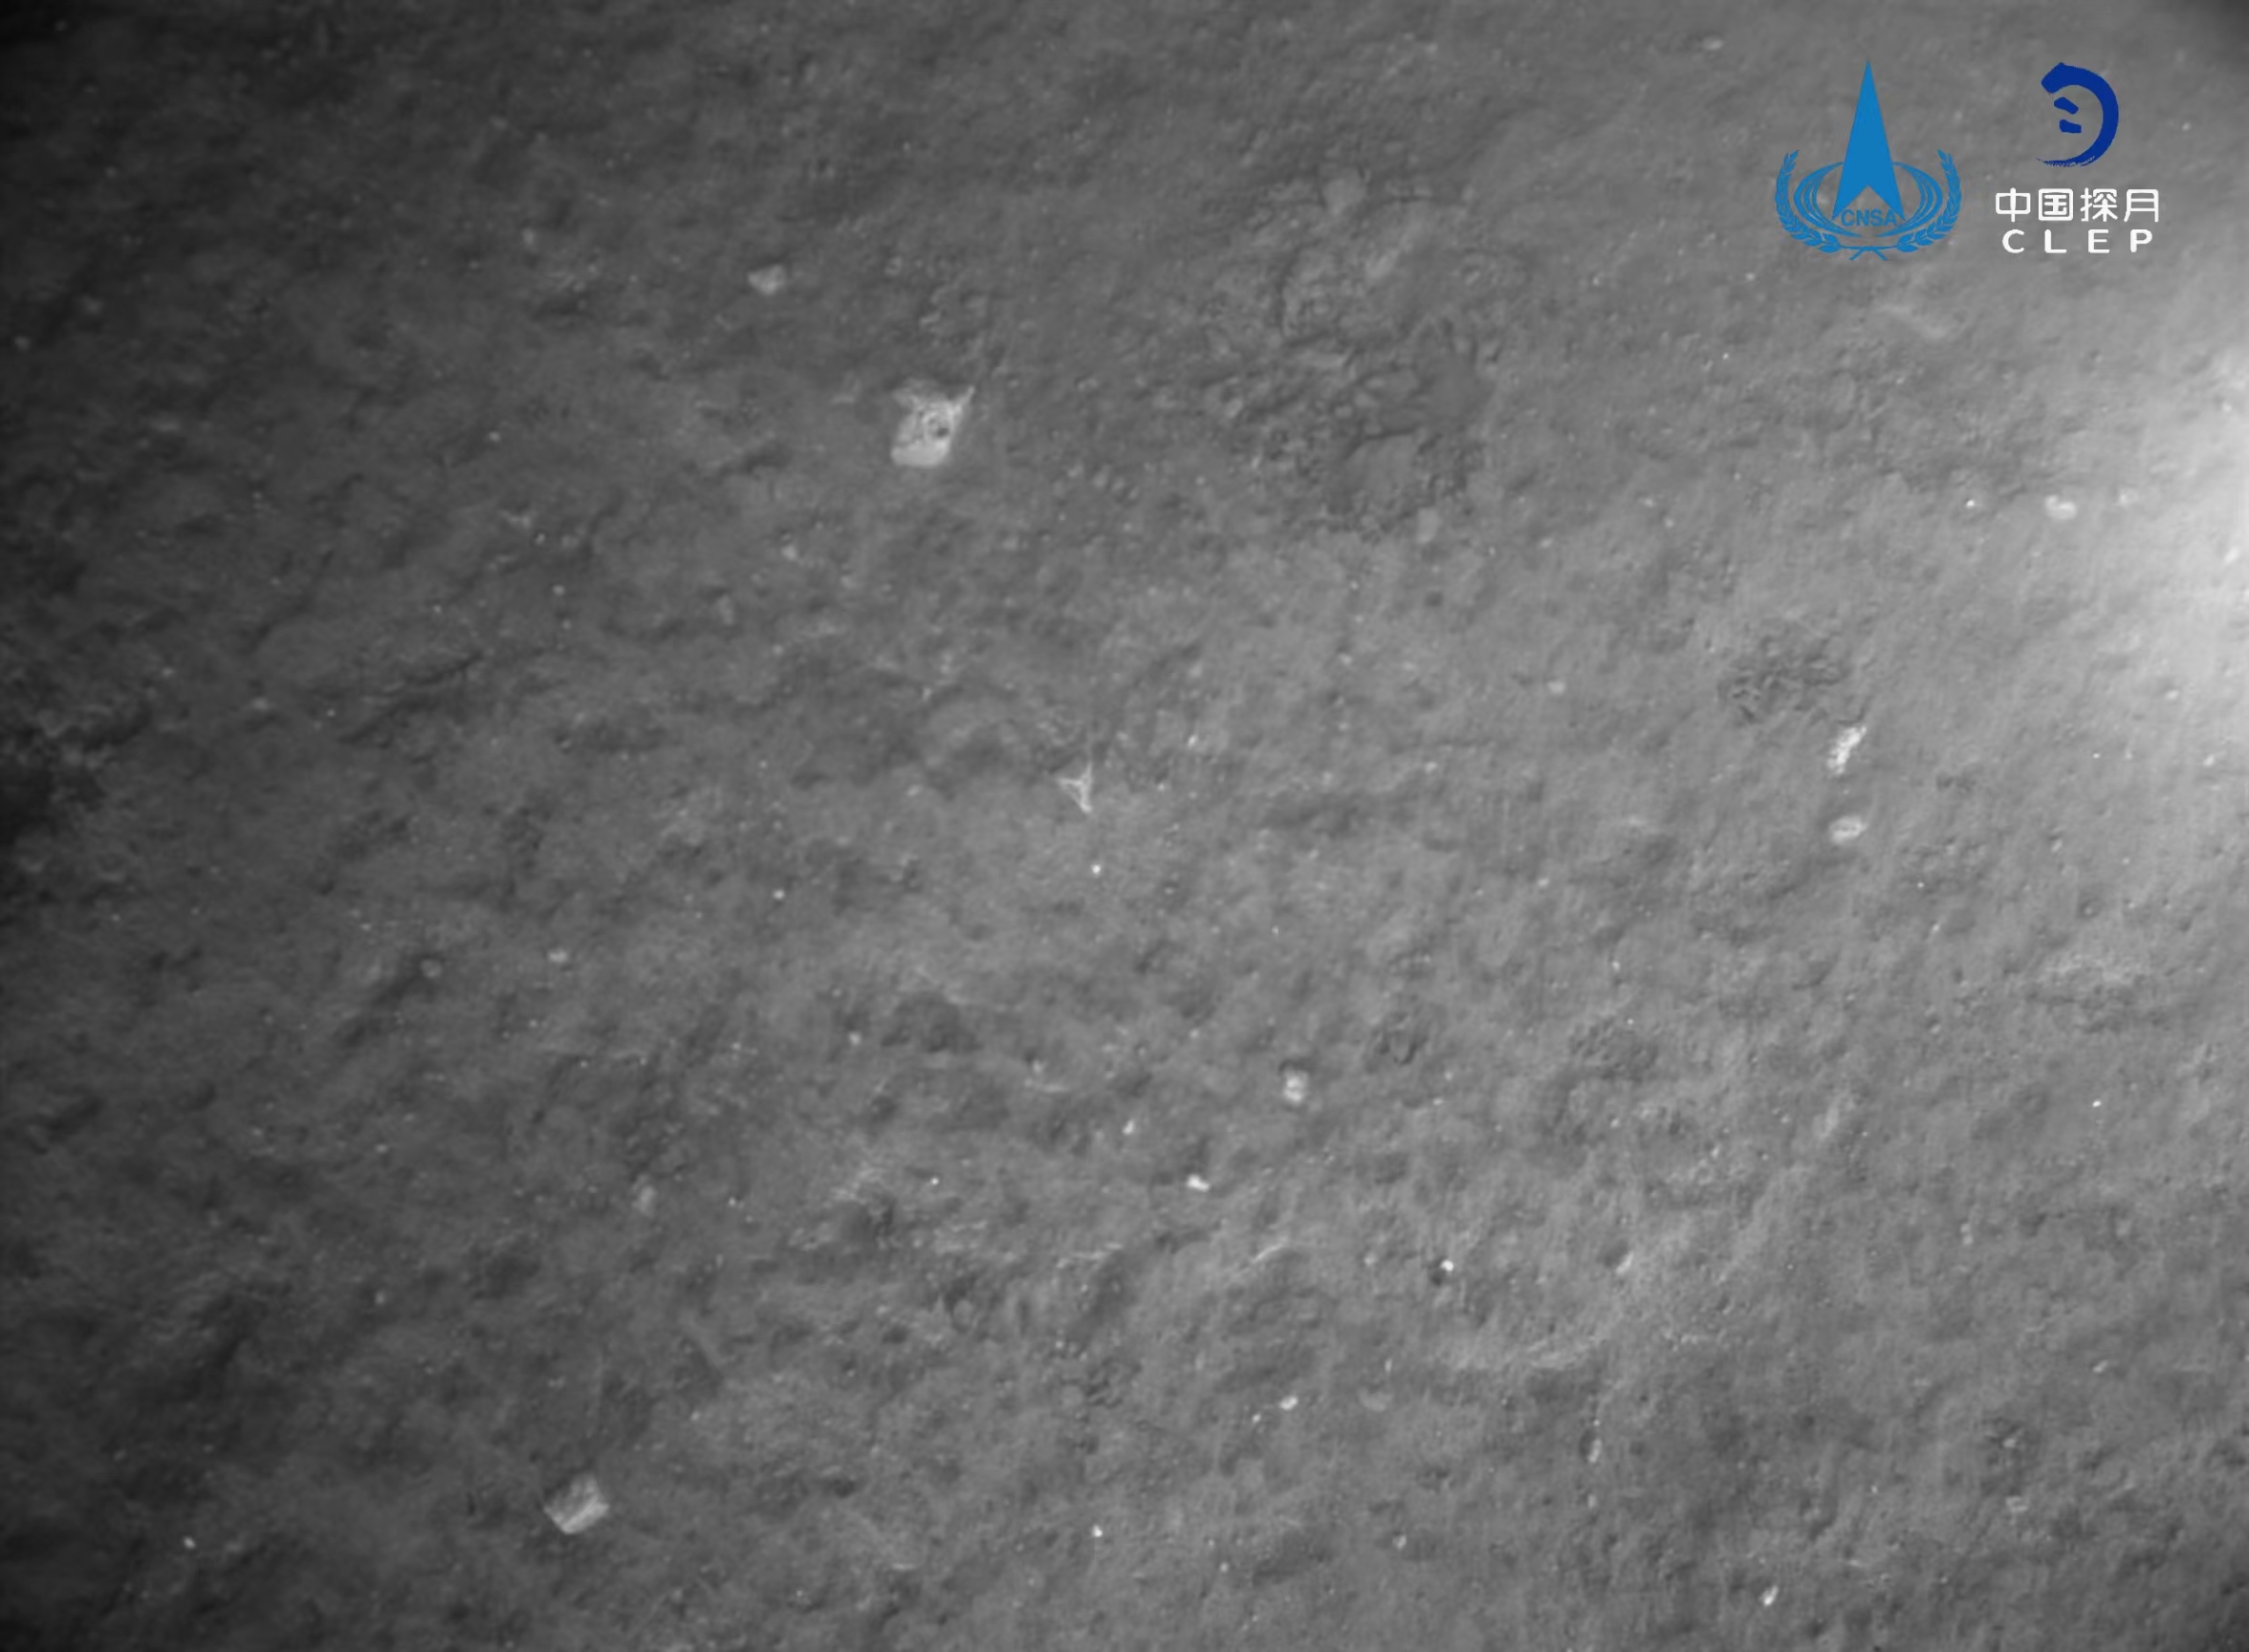 该图由降落相机在着陆器安全着陆后拍摄
�，影像图由地面应用系统处理获得。</p><p style=